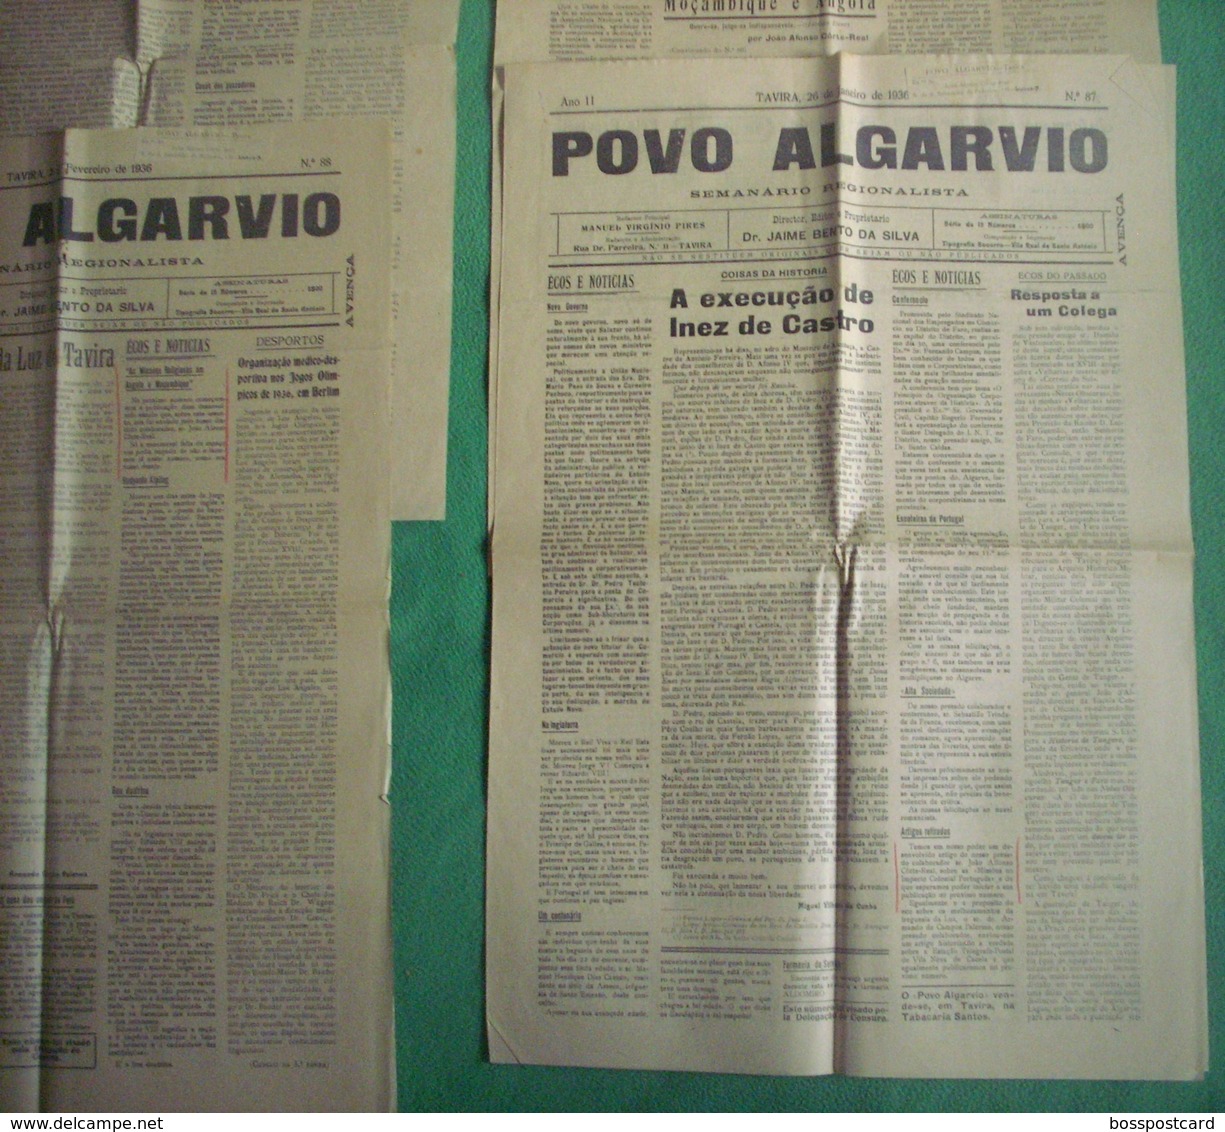 Tavira - 4 Jornais "Povo Algarvio" Nº 87, 88, 89, 92 De 1936 - Imprensa. Faro. - Algemene Informatie